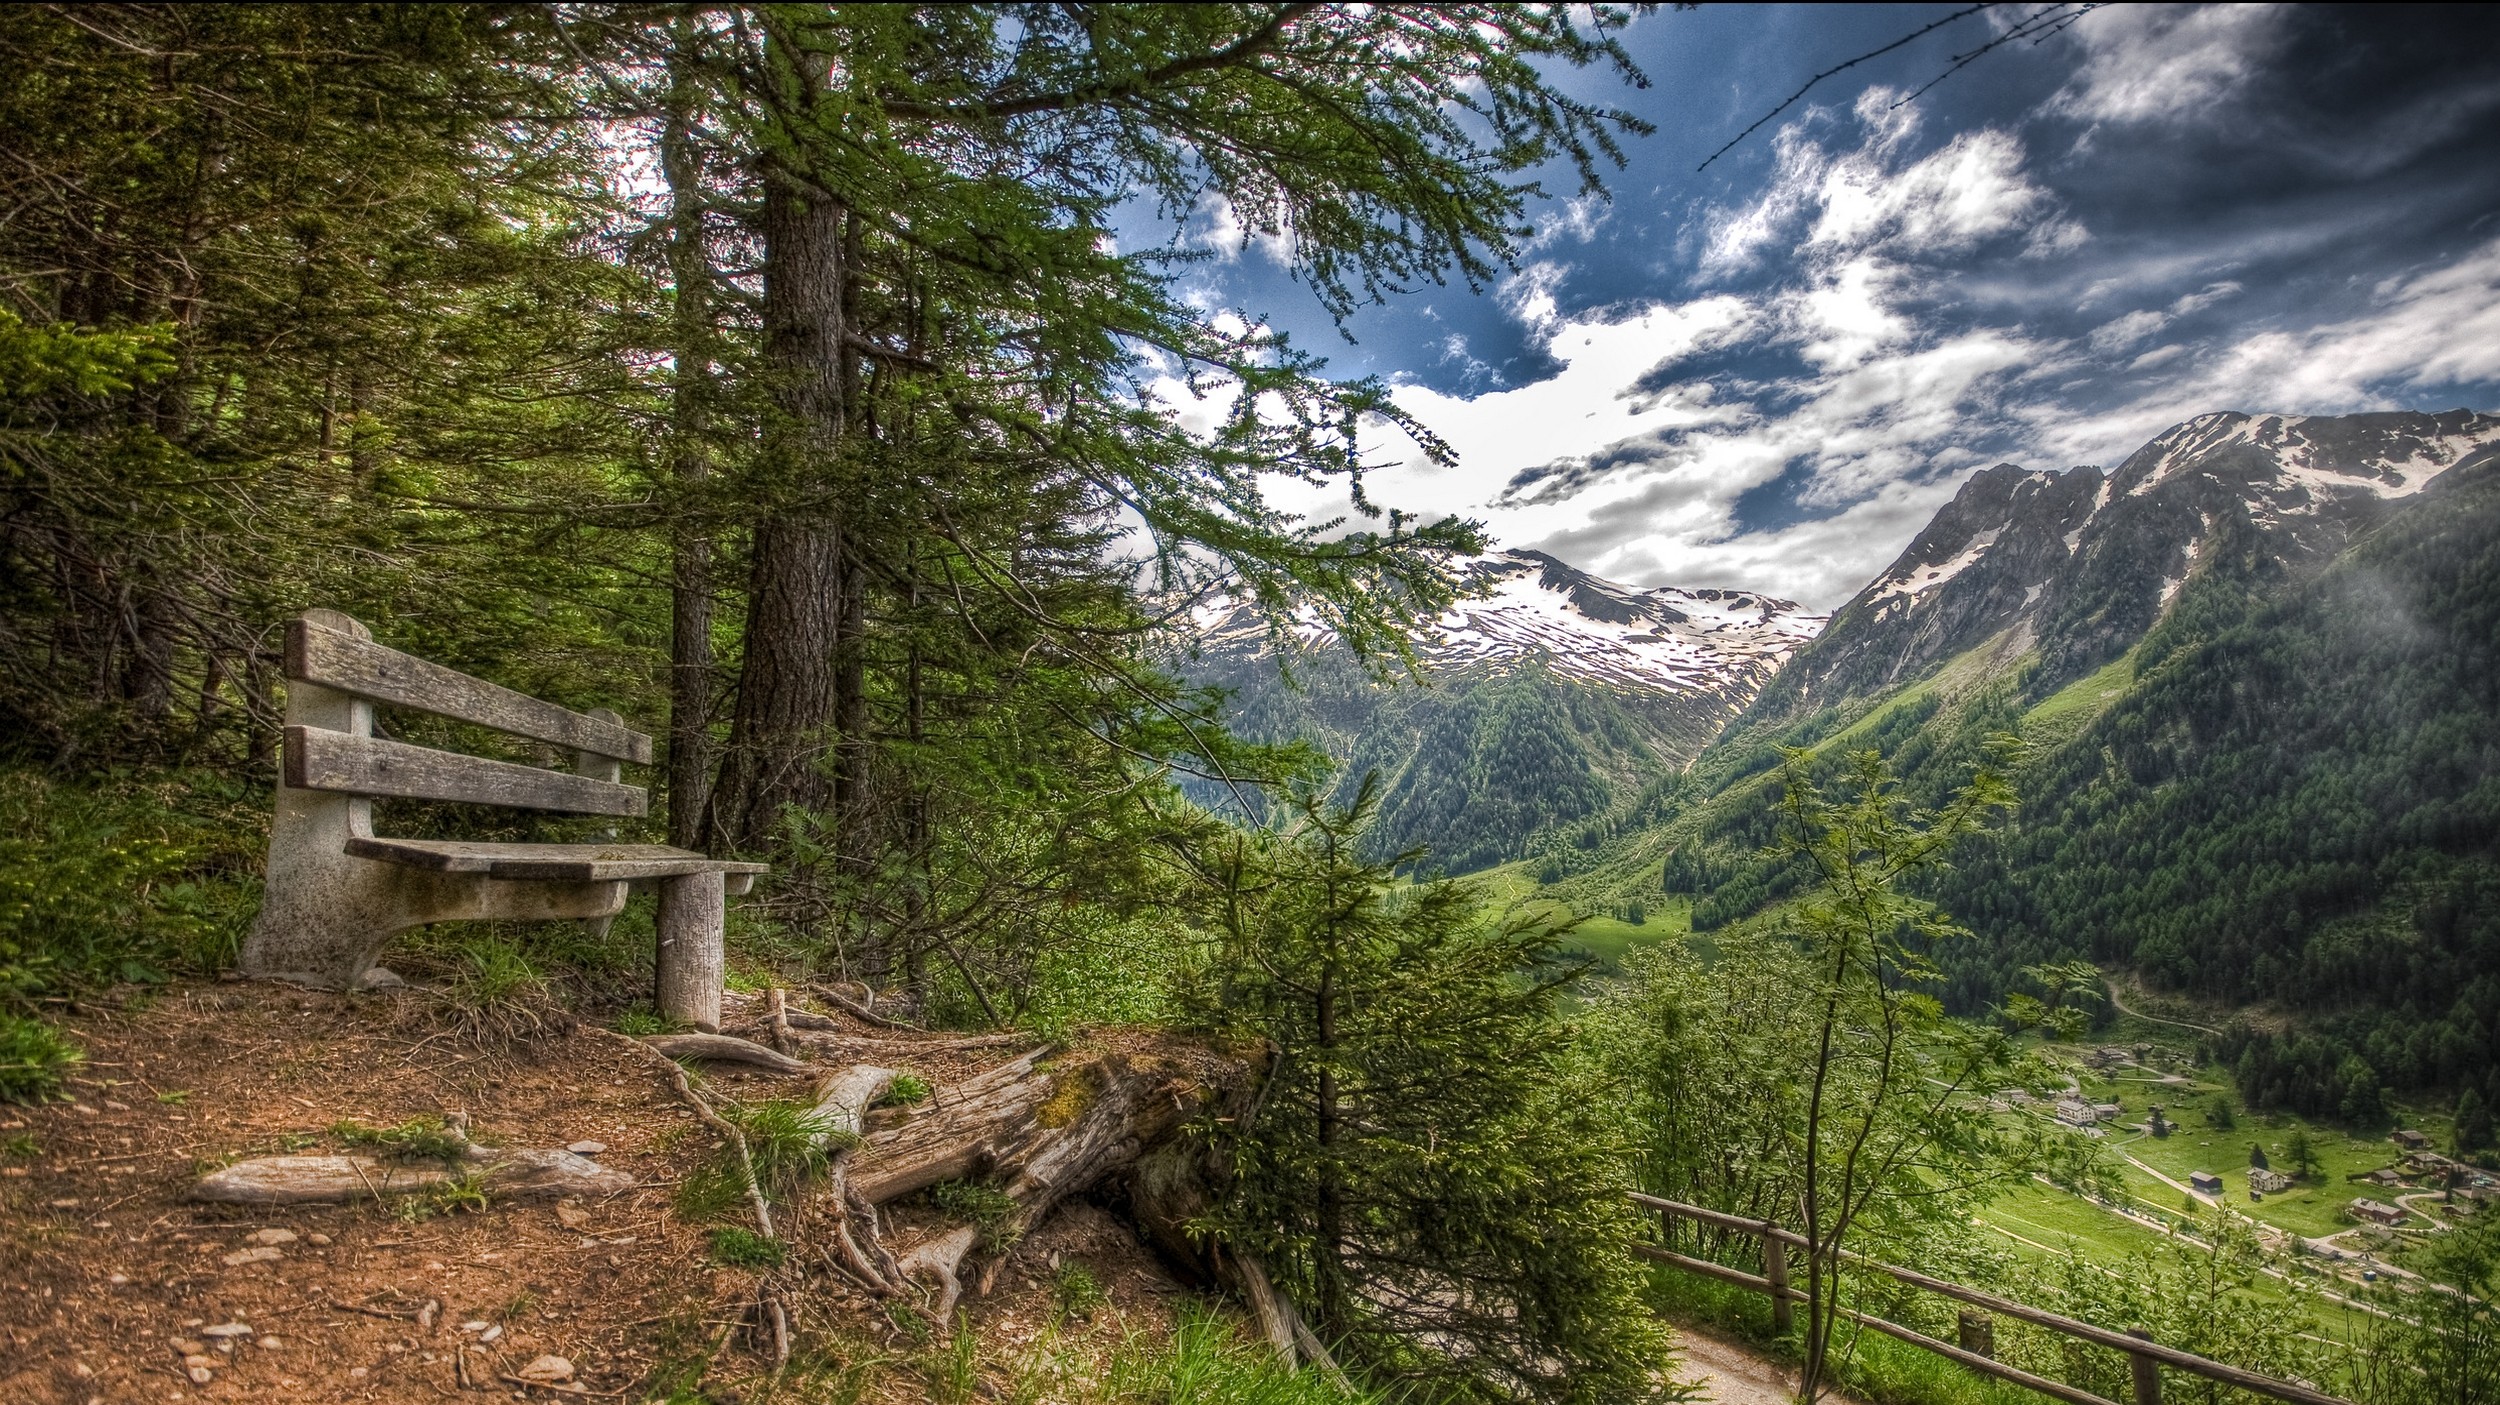 General 2500x1405 nature landscape forest mountains valley bench village summer Alps snowy peak Switzerland